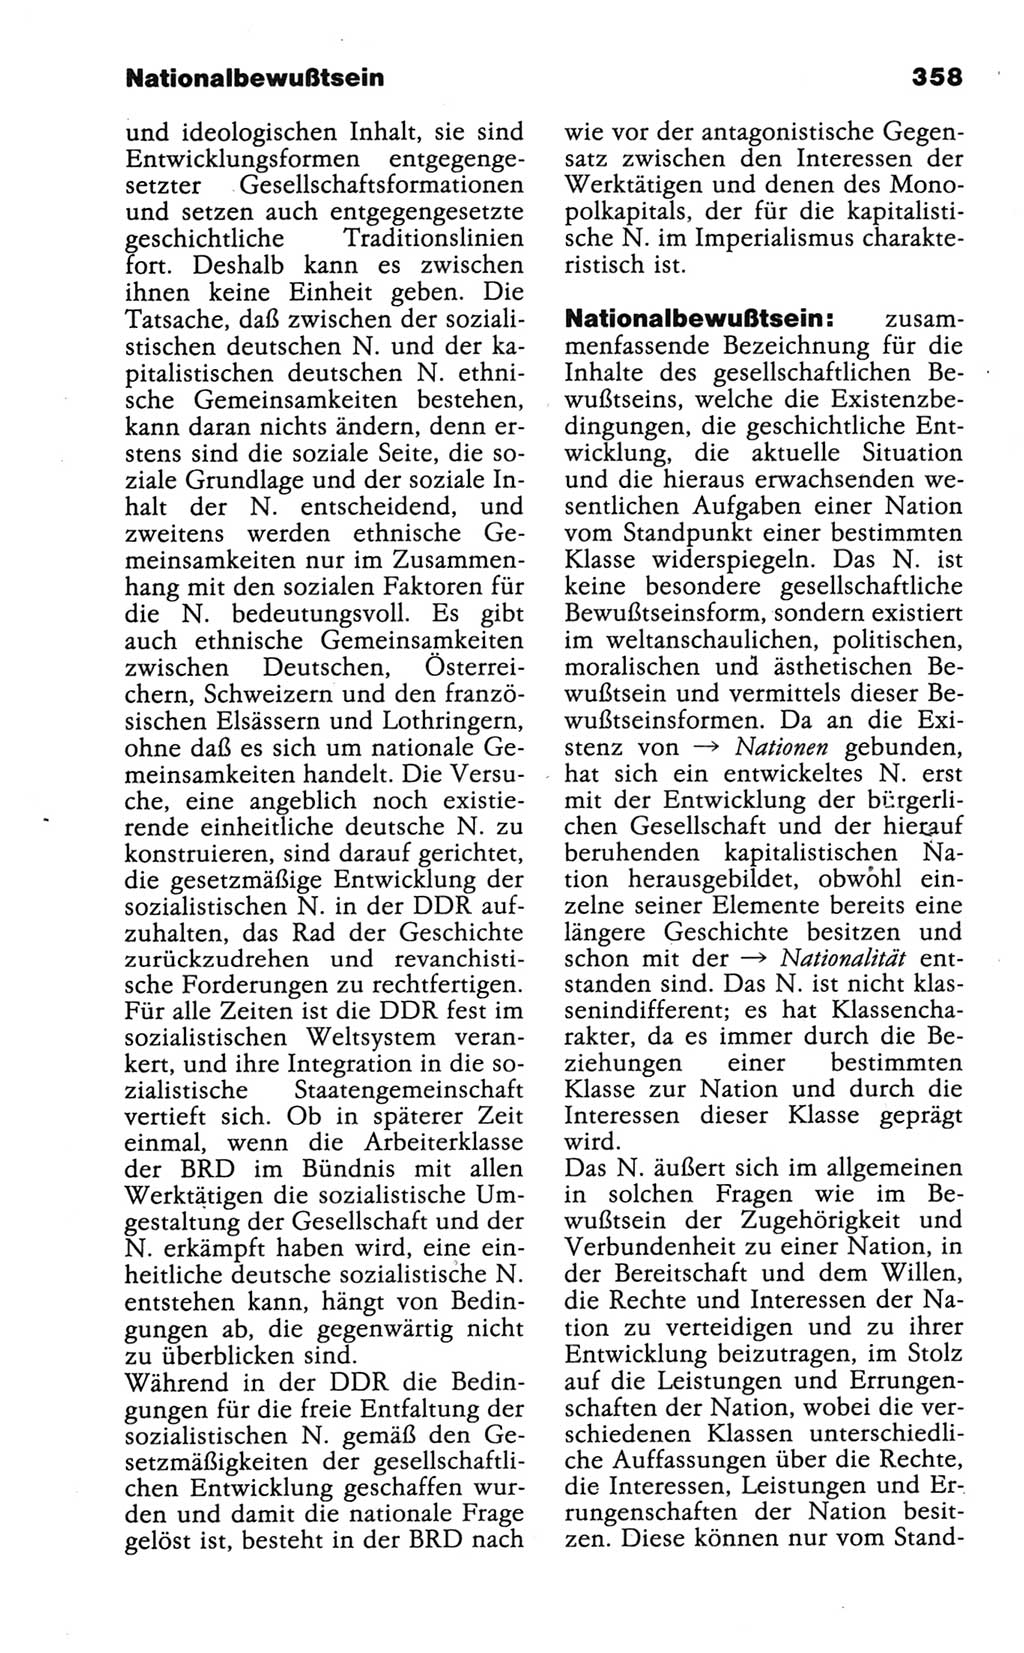 Wörterbuch der marxistisch-leninistischen Philosophie [Deutsche Demokratische Republik (DDR)] 1986, Seite 358 (Wb. ML Phil. DDR 1986, S. 358)